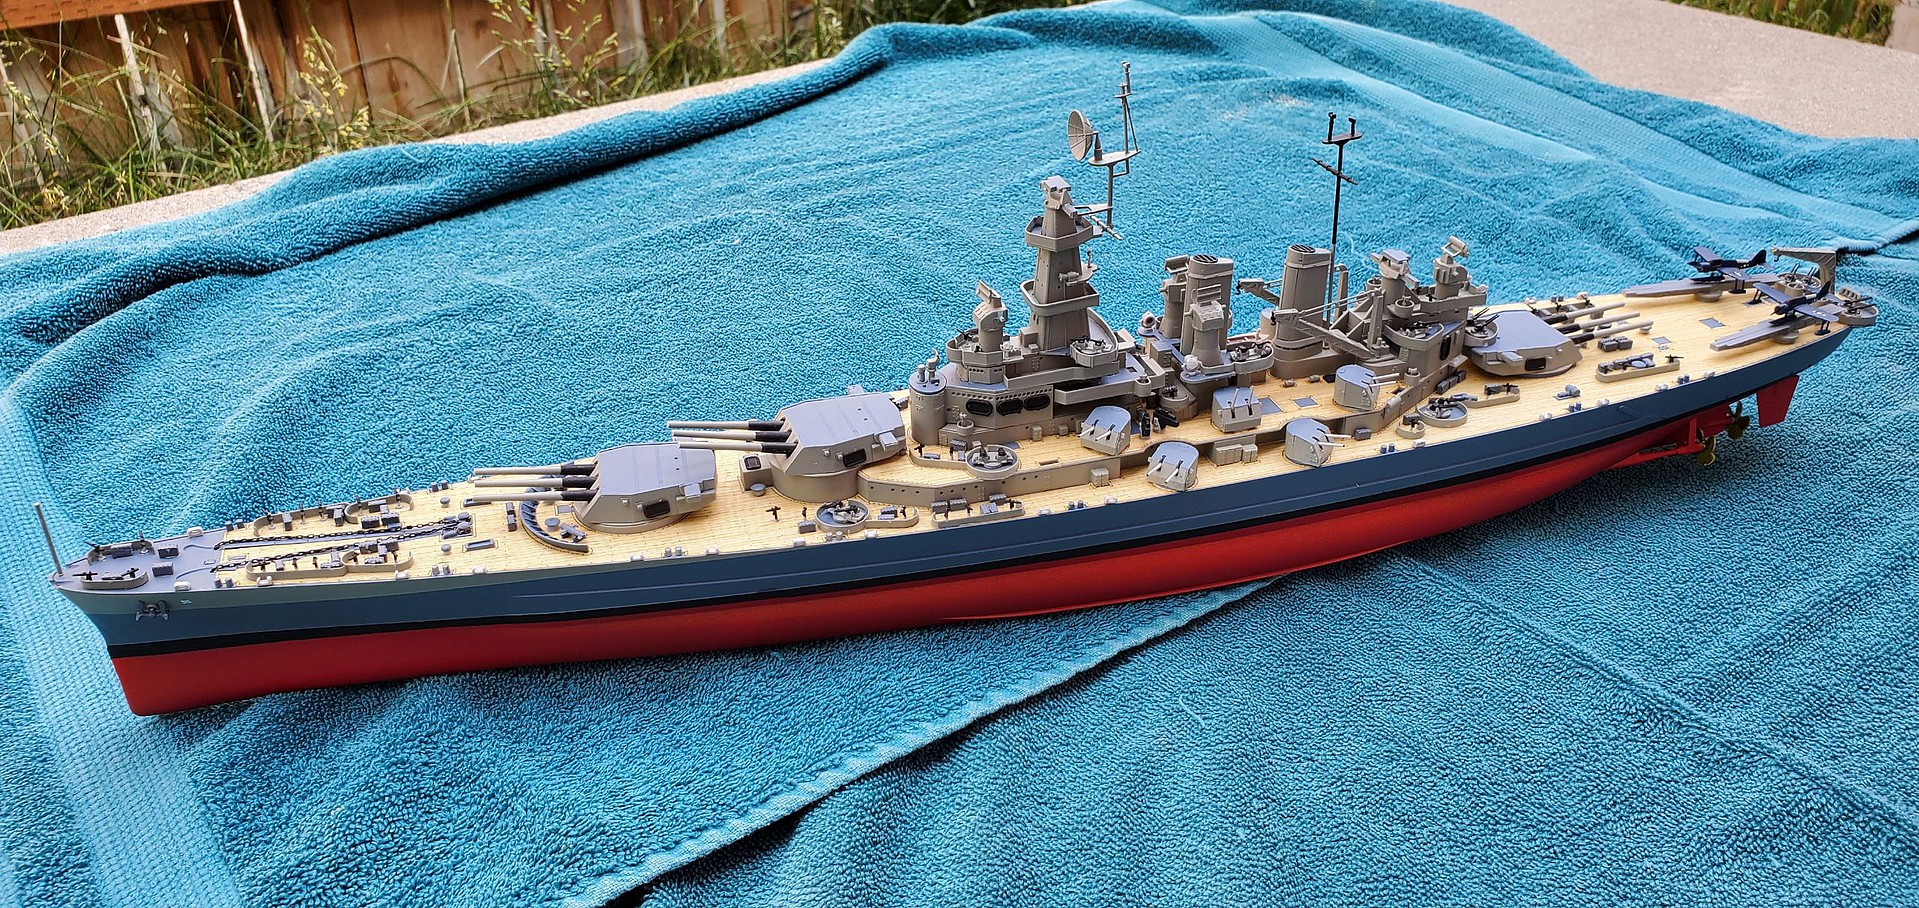 Uss North Carolina Battleship Model | My XXX Hot Girl